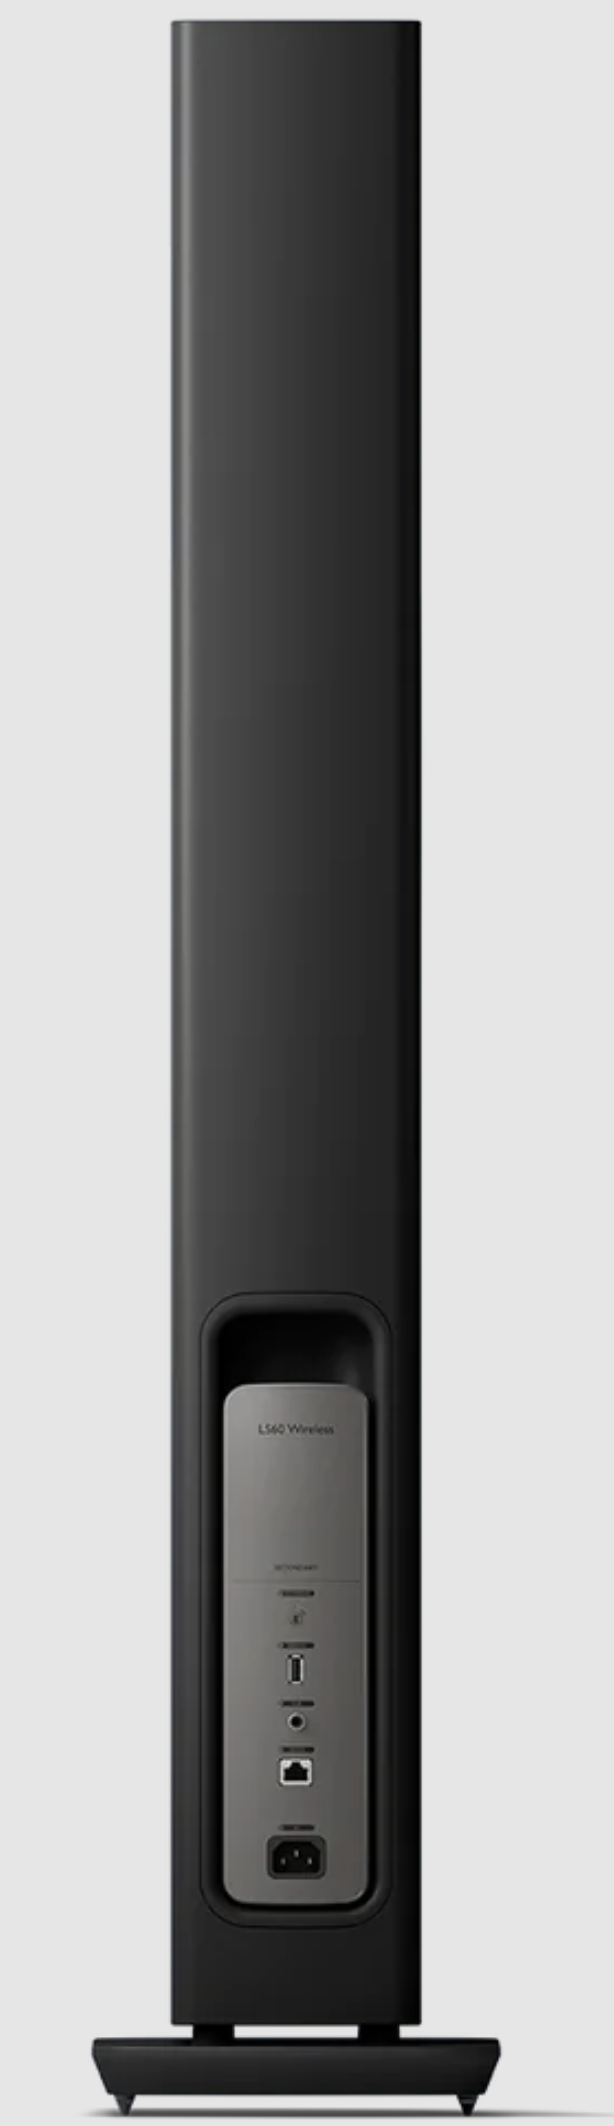 KEF LS60 Wireless Floorstanding Speakers Speakers in Carbon Black - back mage